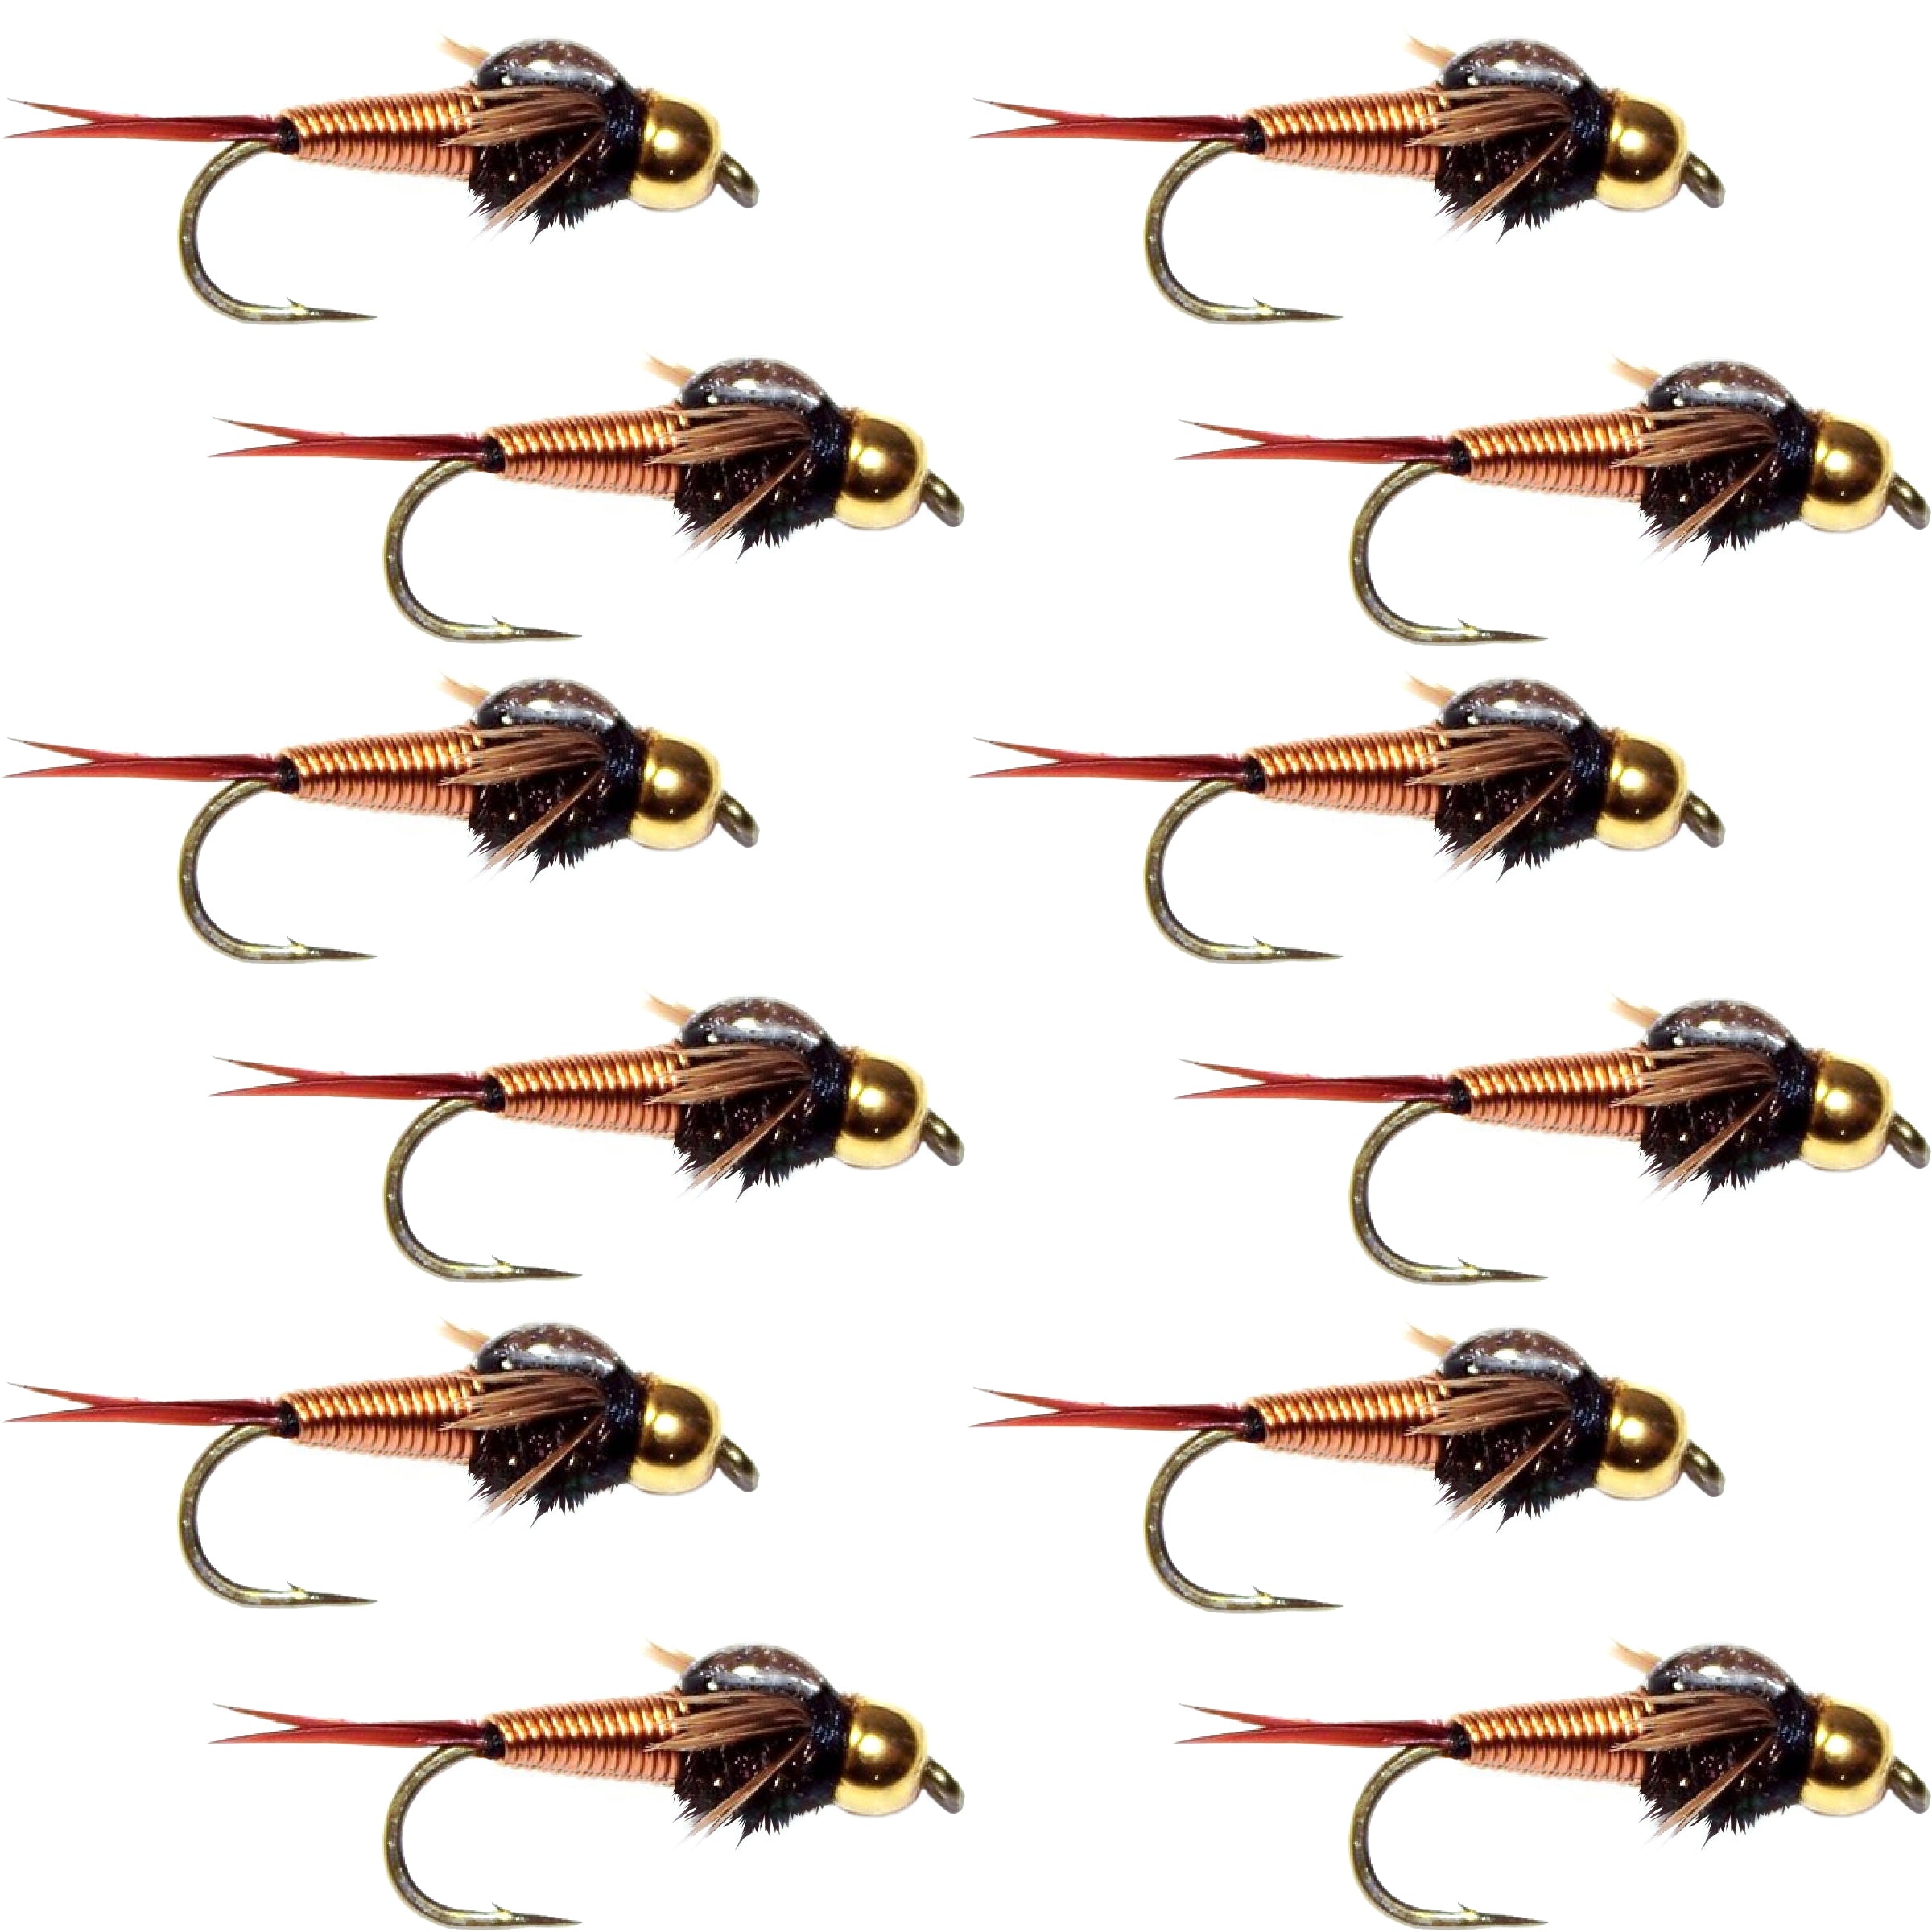 Tungsten Bead Head Copper John Nymph 1 Dozen Fly Fishing Flies - Hook Size 18